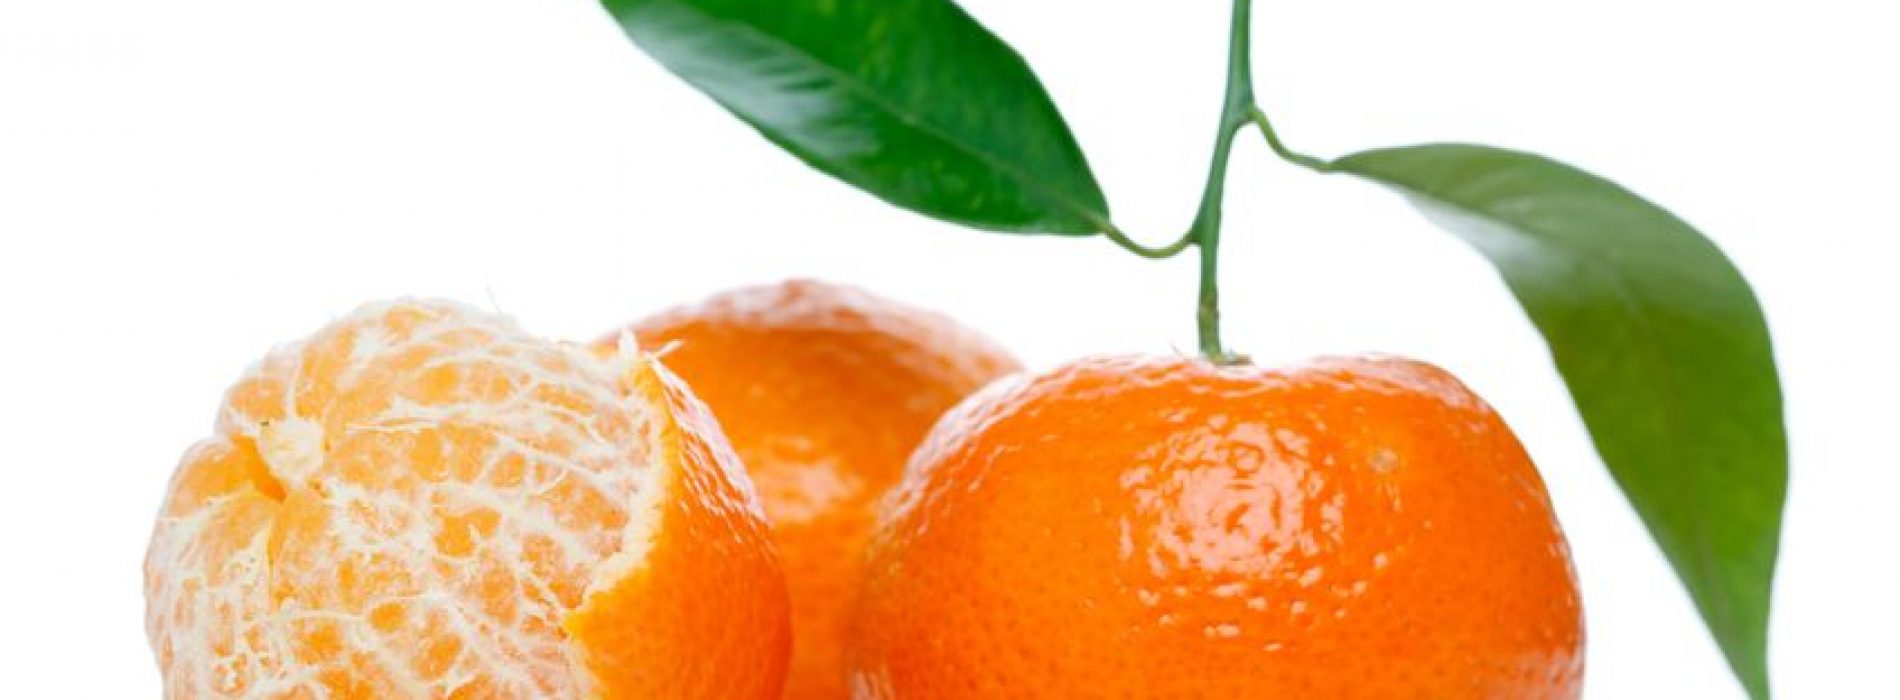 Eet mandarijnen om vet te bestrijden